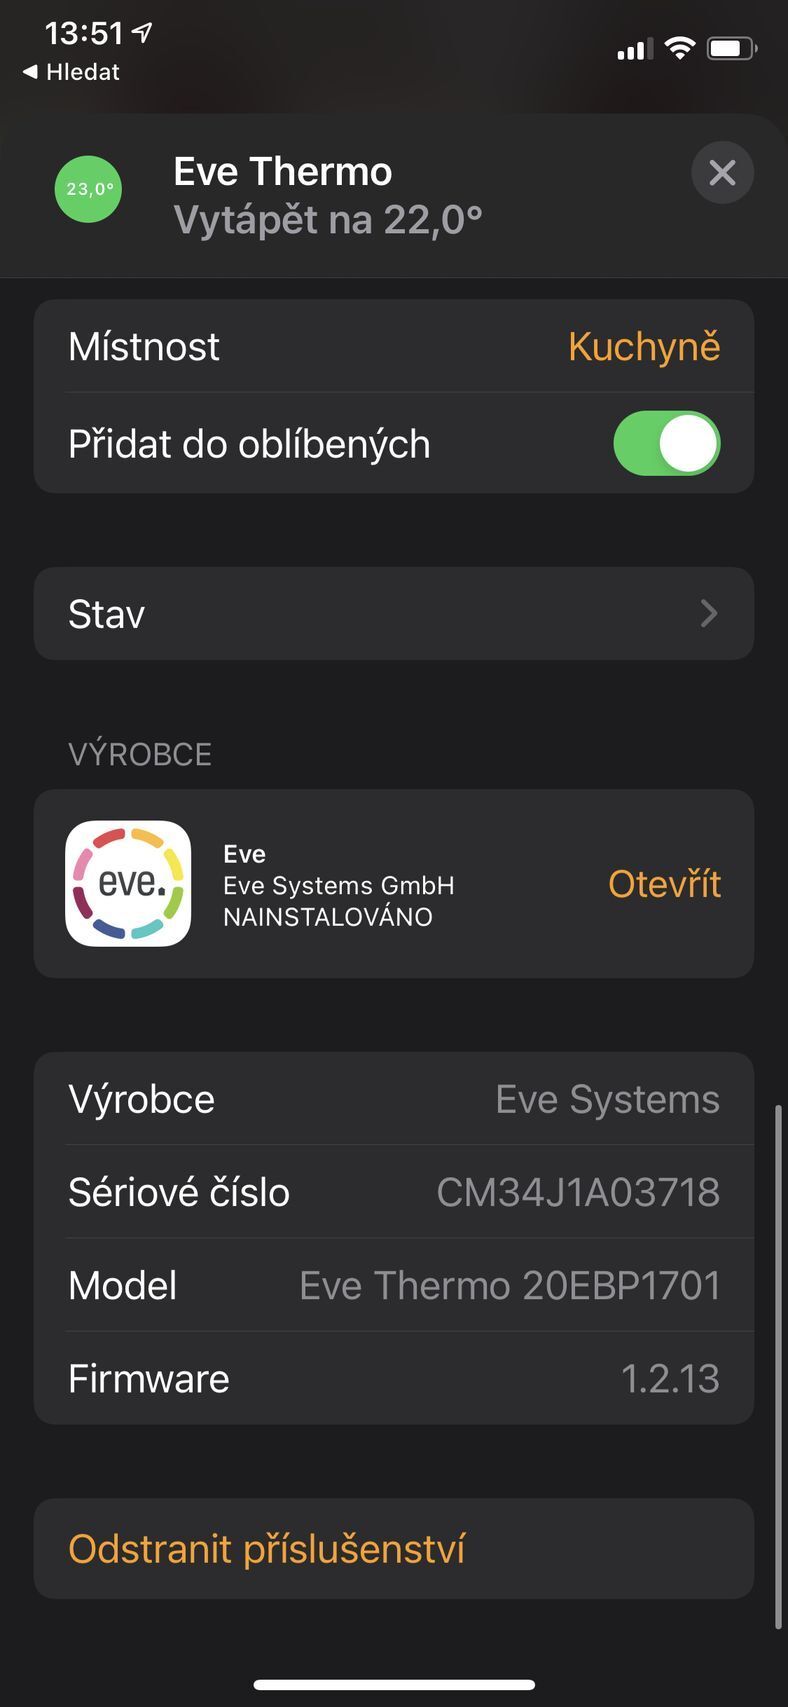 Eve Thermo (2020) - aplikace Domácnost a Eve